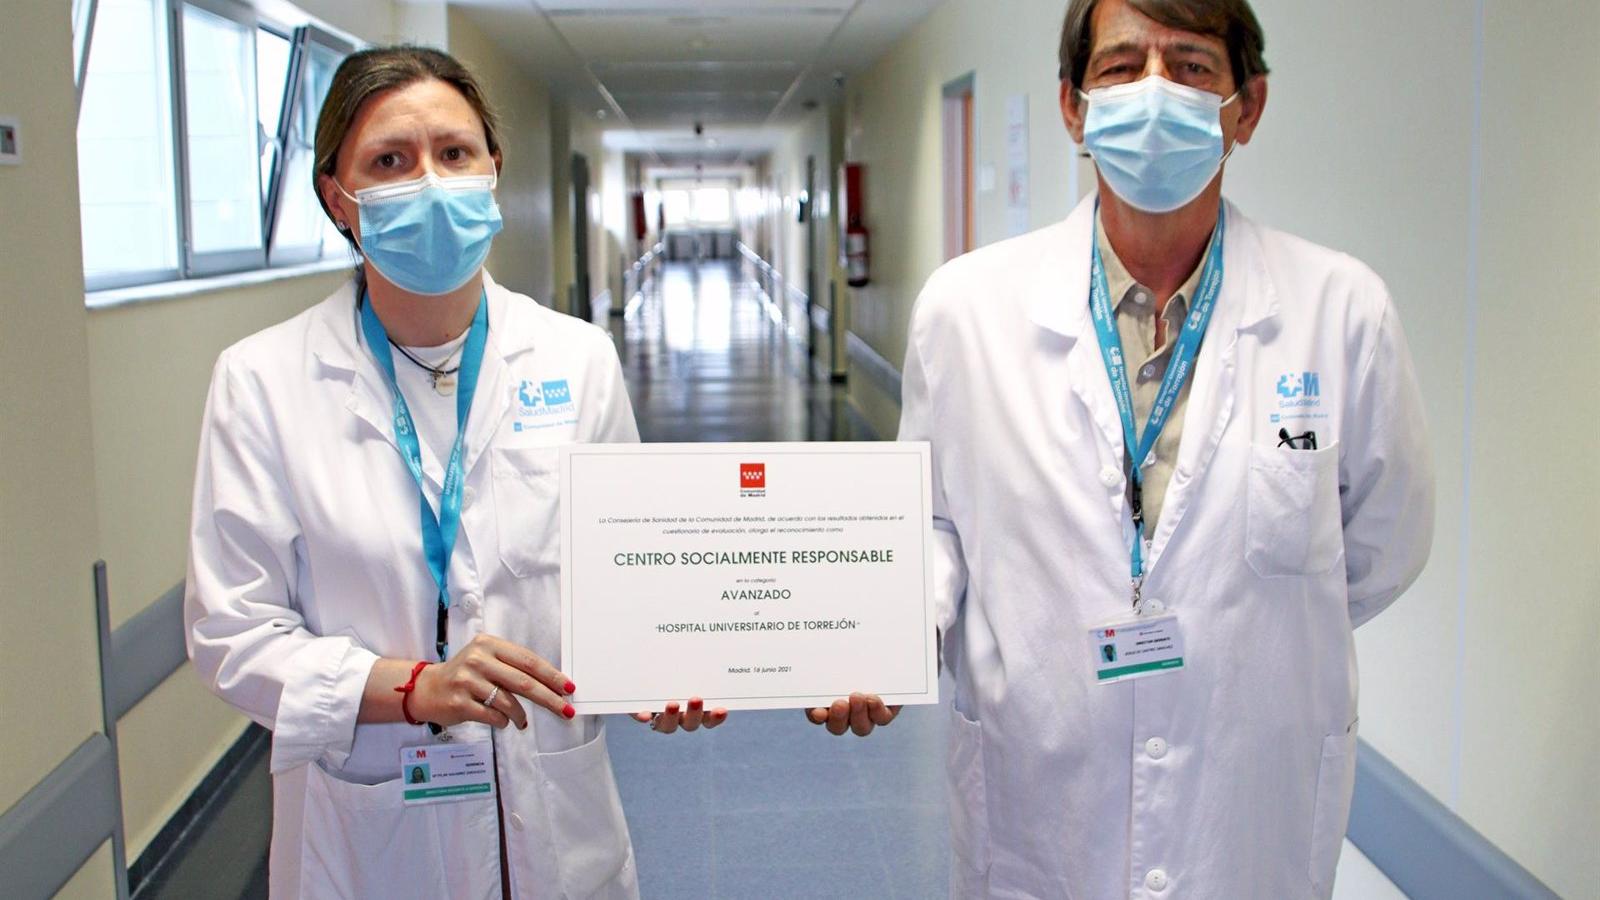 El Hospital Universitario de Torrejón recibe el reconocimiento de Centro Socialmente Responsable en la categoría "avanzado"